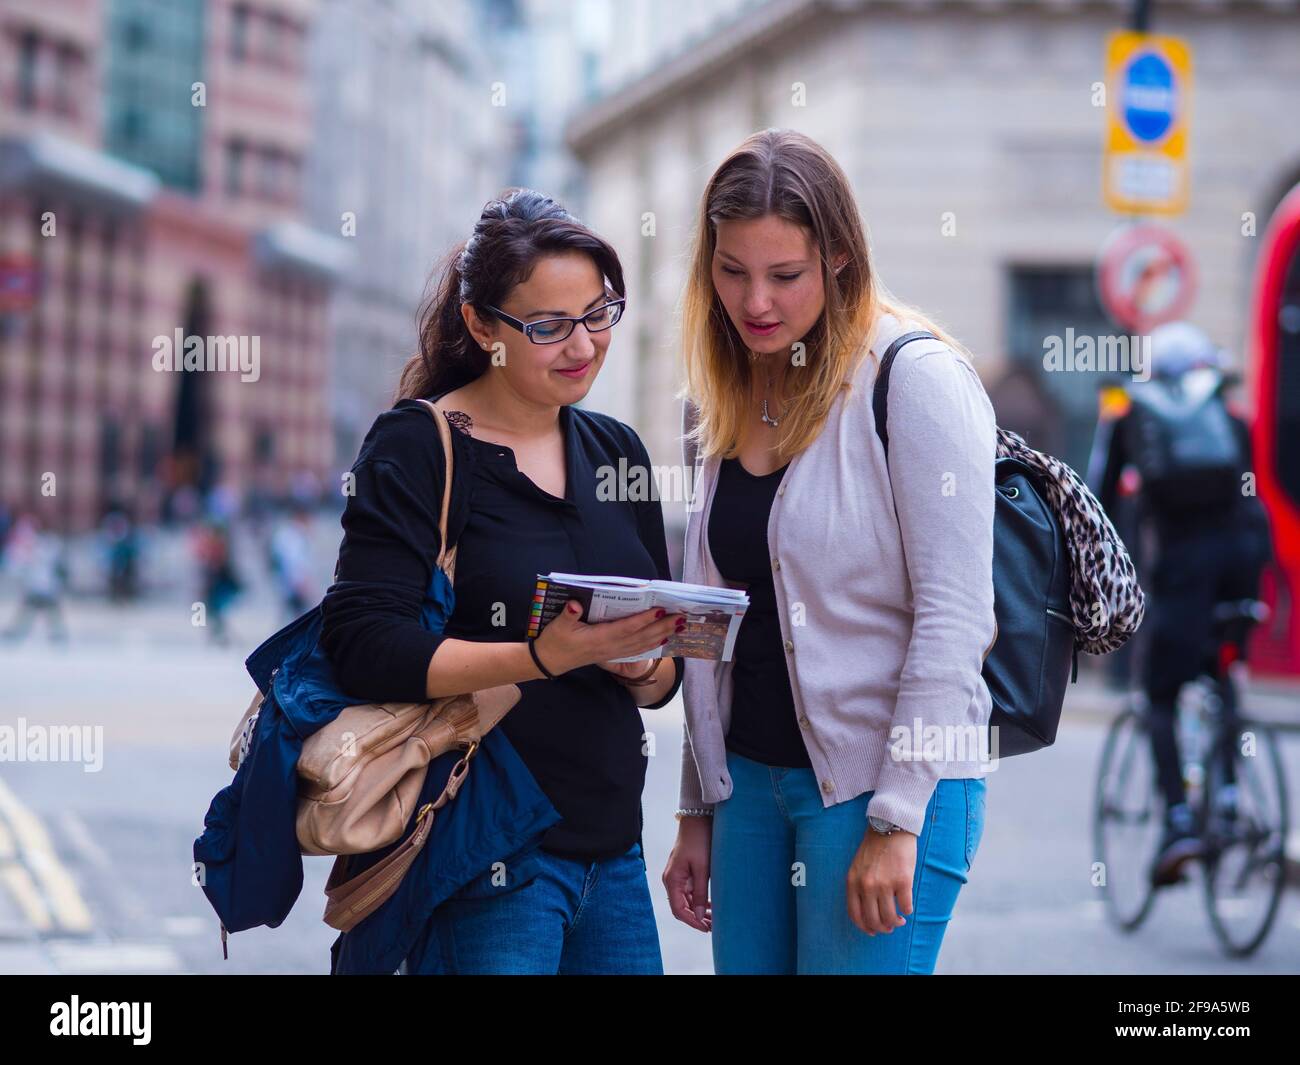 Deux filles lisent une carte dans le centre-ville de Londres - photographie de voyage Banque D'Images